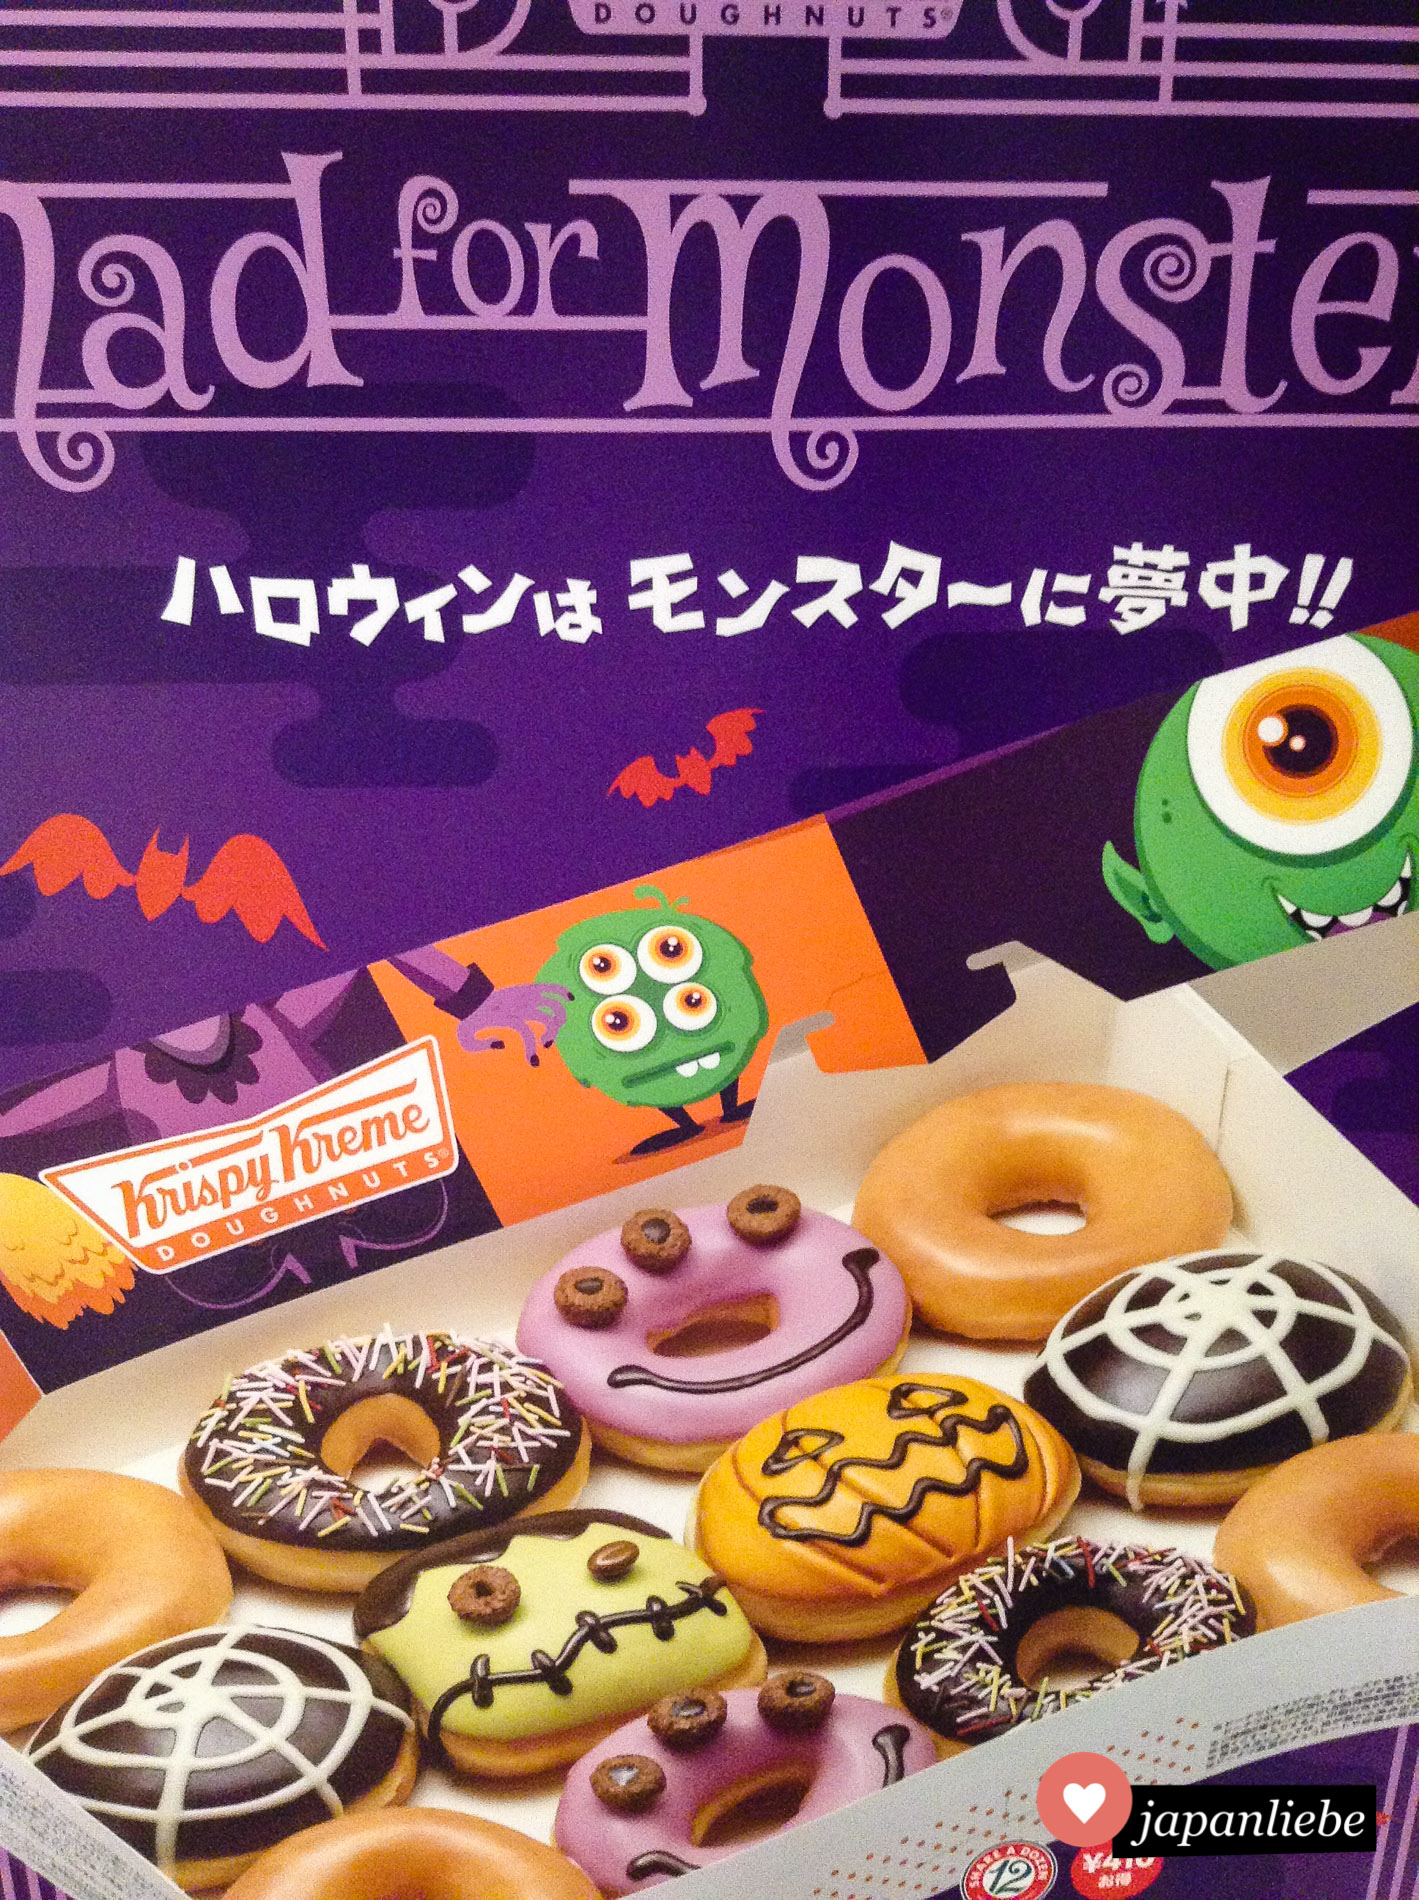 Halloween in Japan bringt vor allem viele kreative und schaurig-niedliche Lebensmittel hervor. Wie die Donut-Kollektion von Krispy Kreme aus dem Jahr 2015.